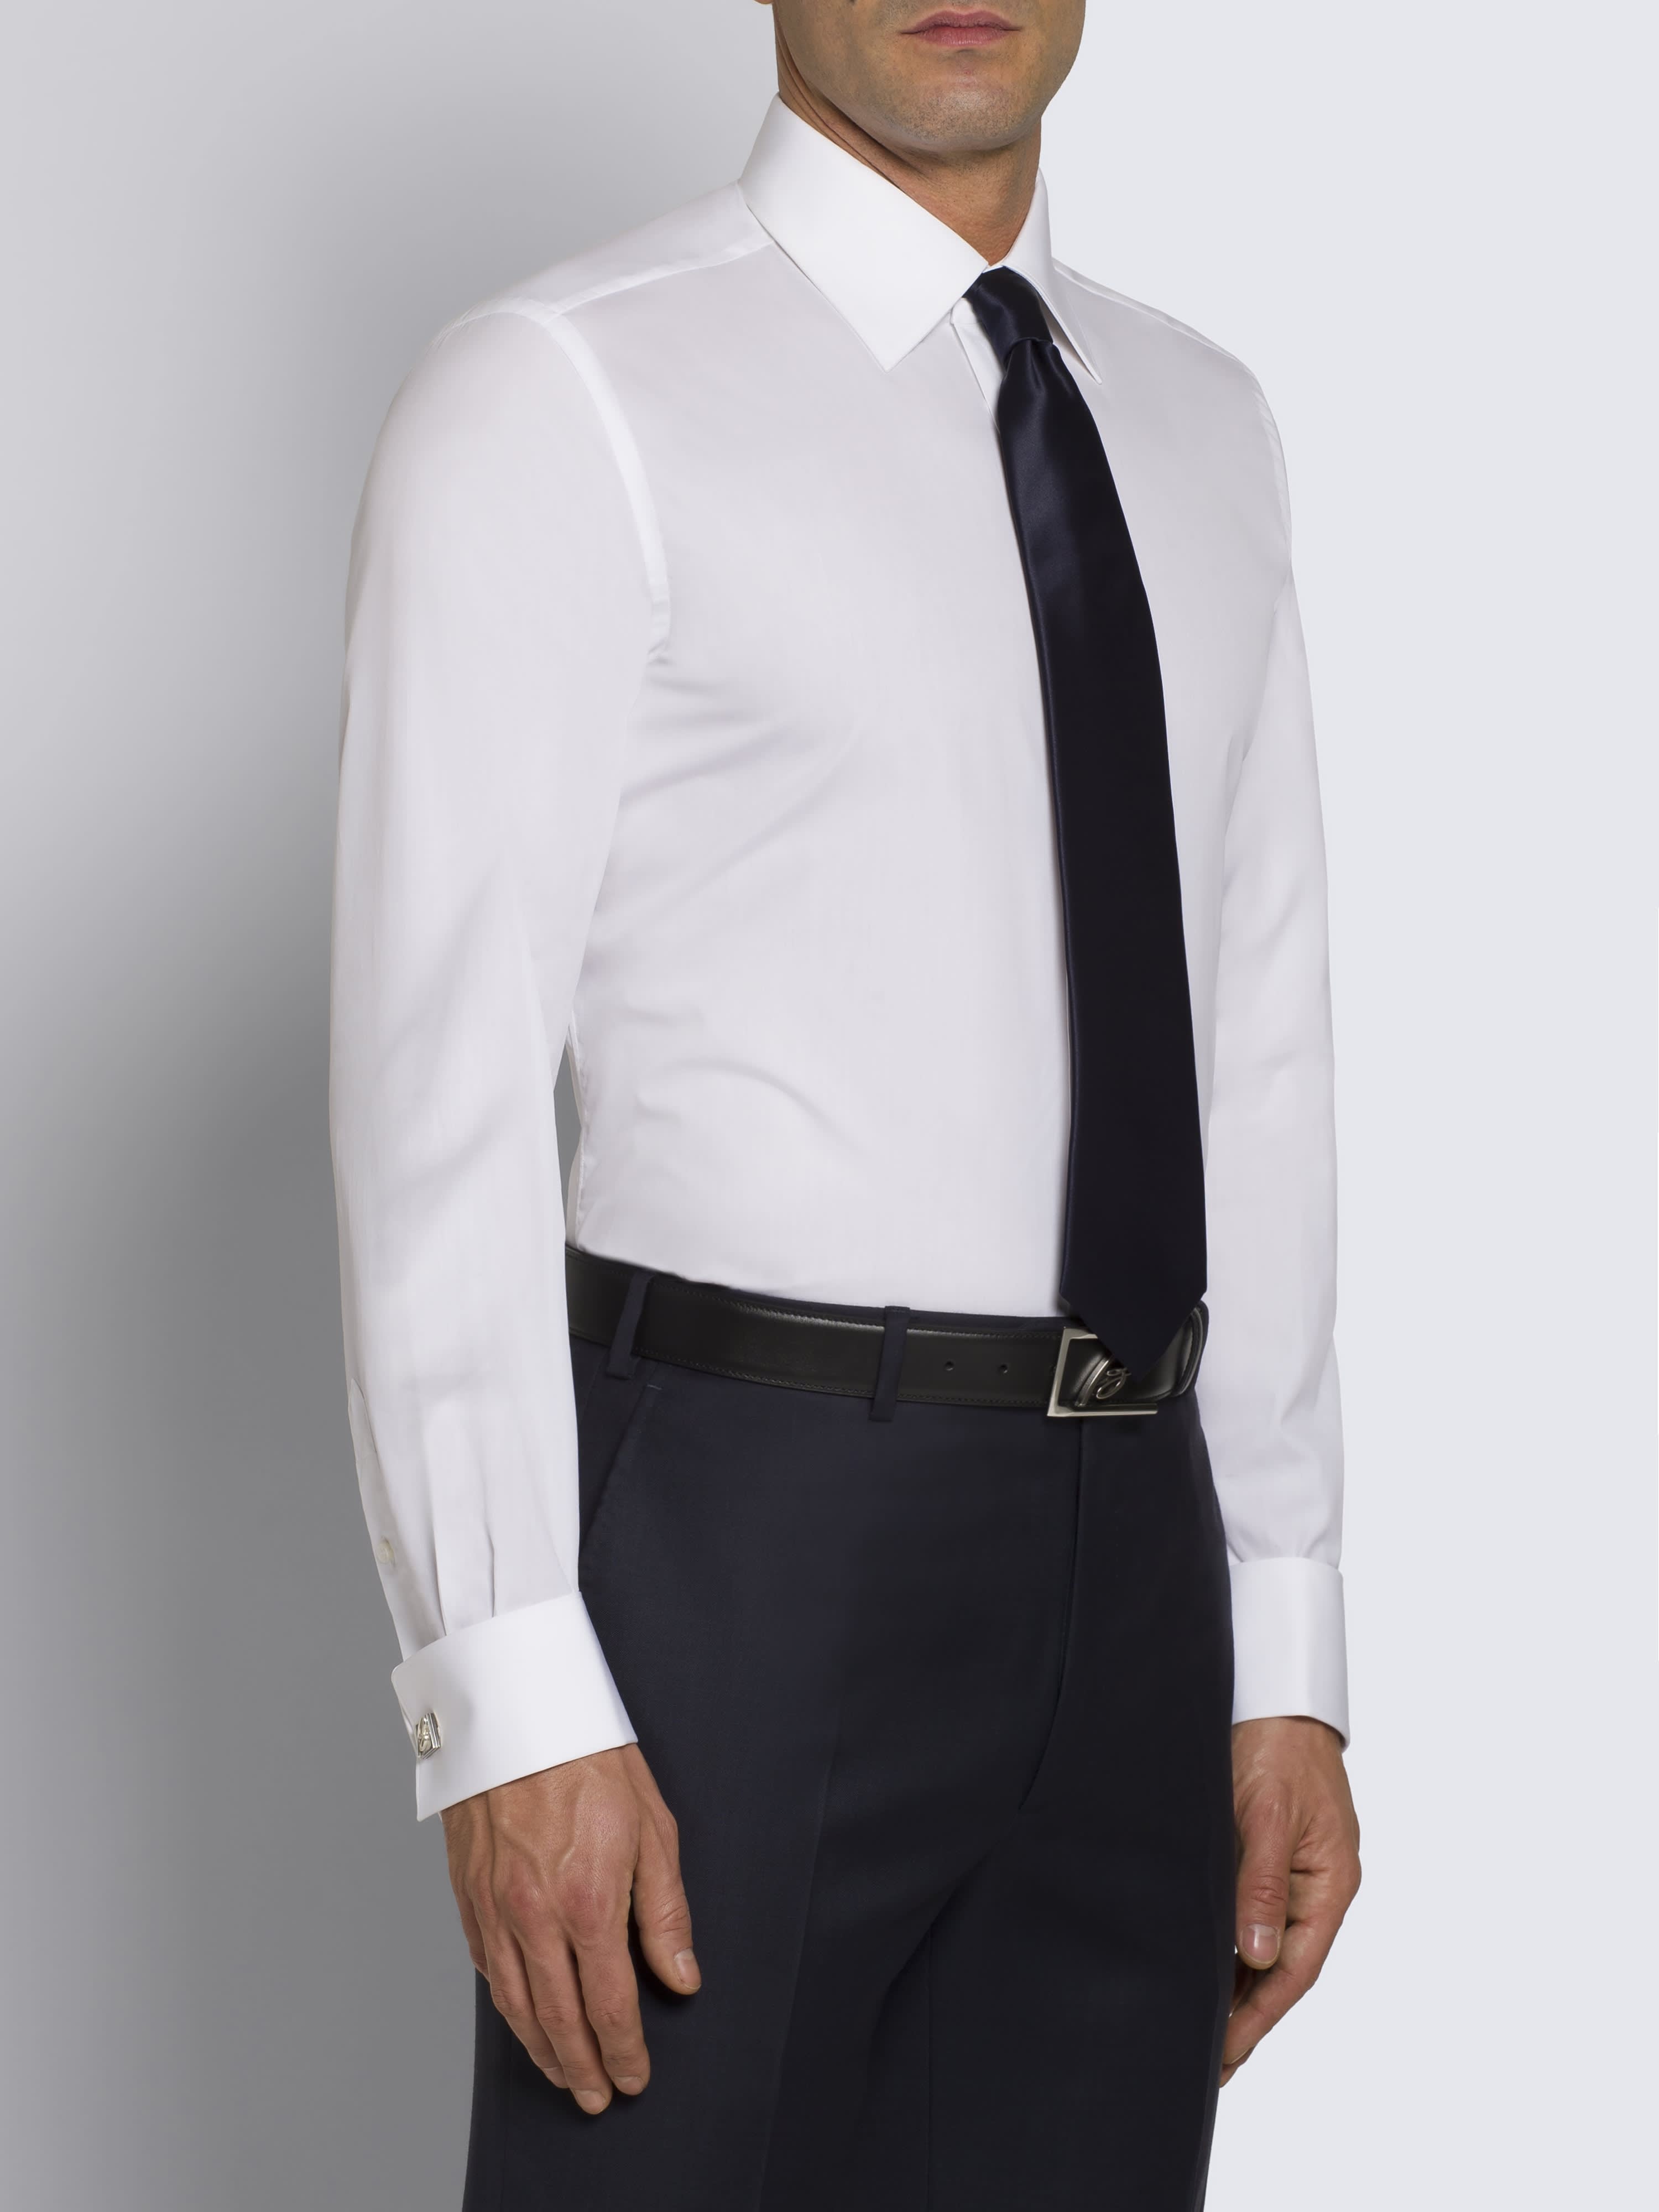 Essential' white formal shirt